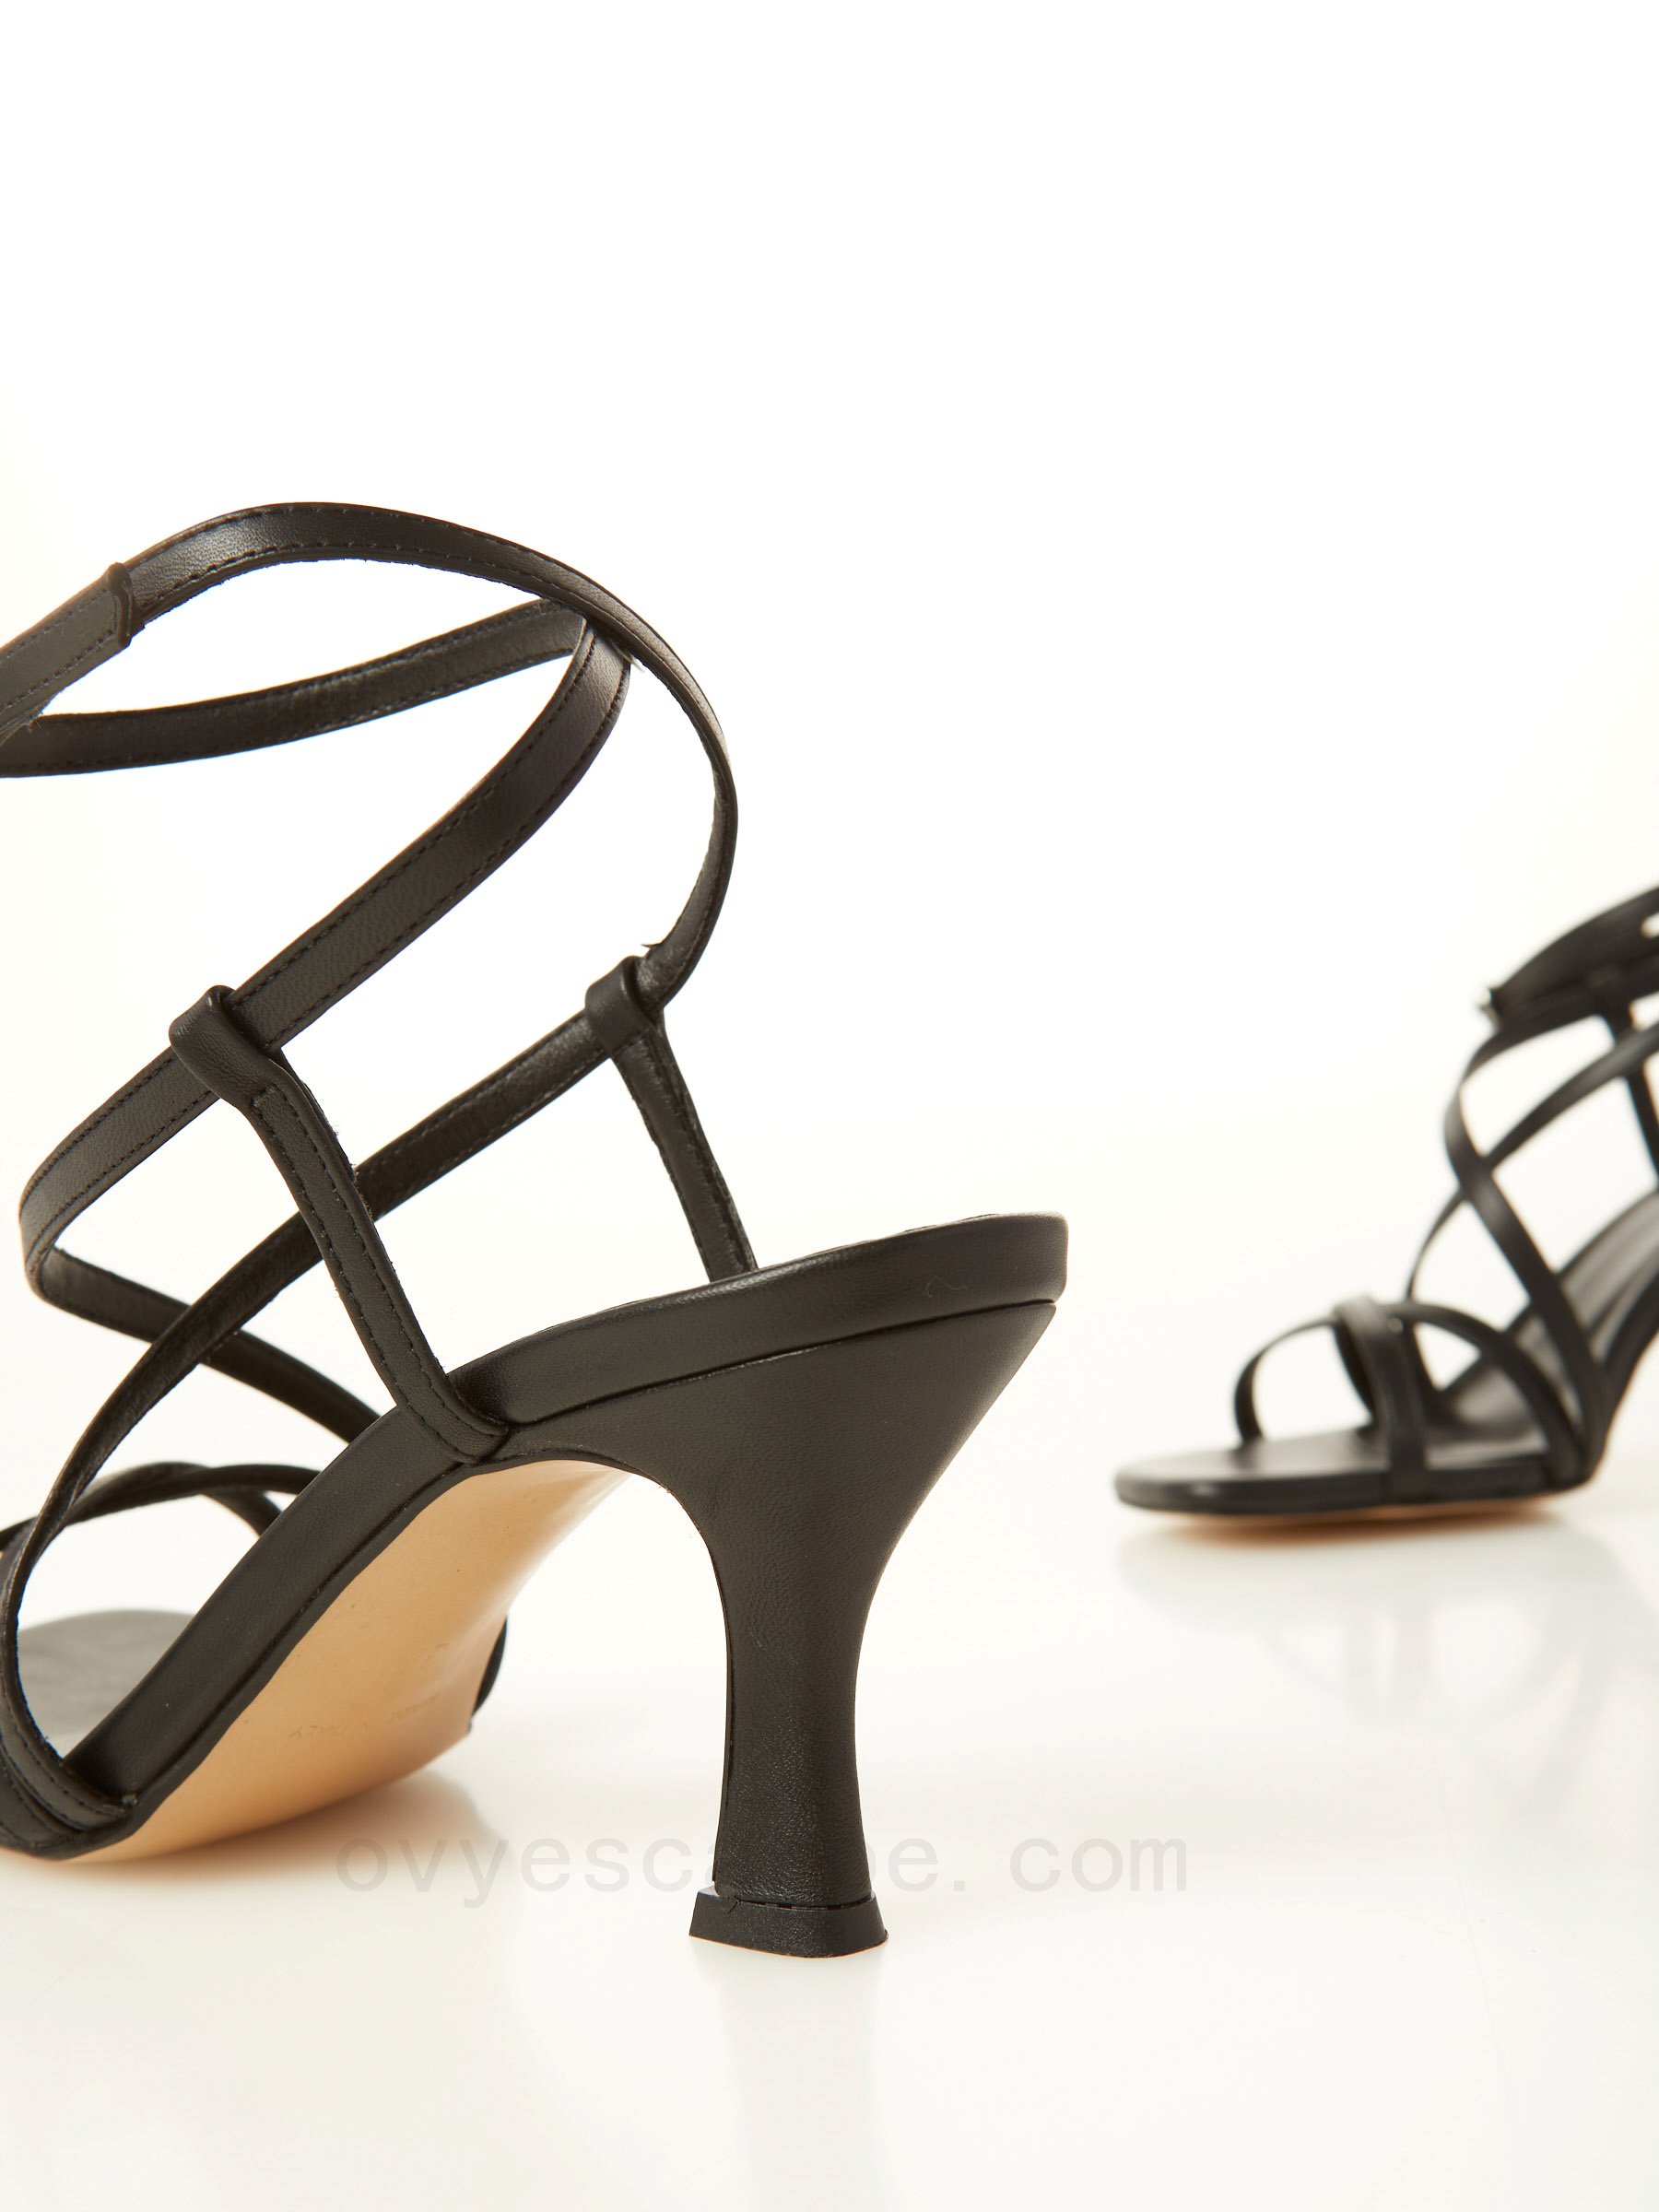 Fino Al -80% Leather Heel Sandal F08161027-0582 Autentico